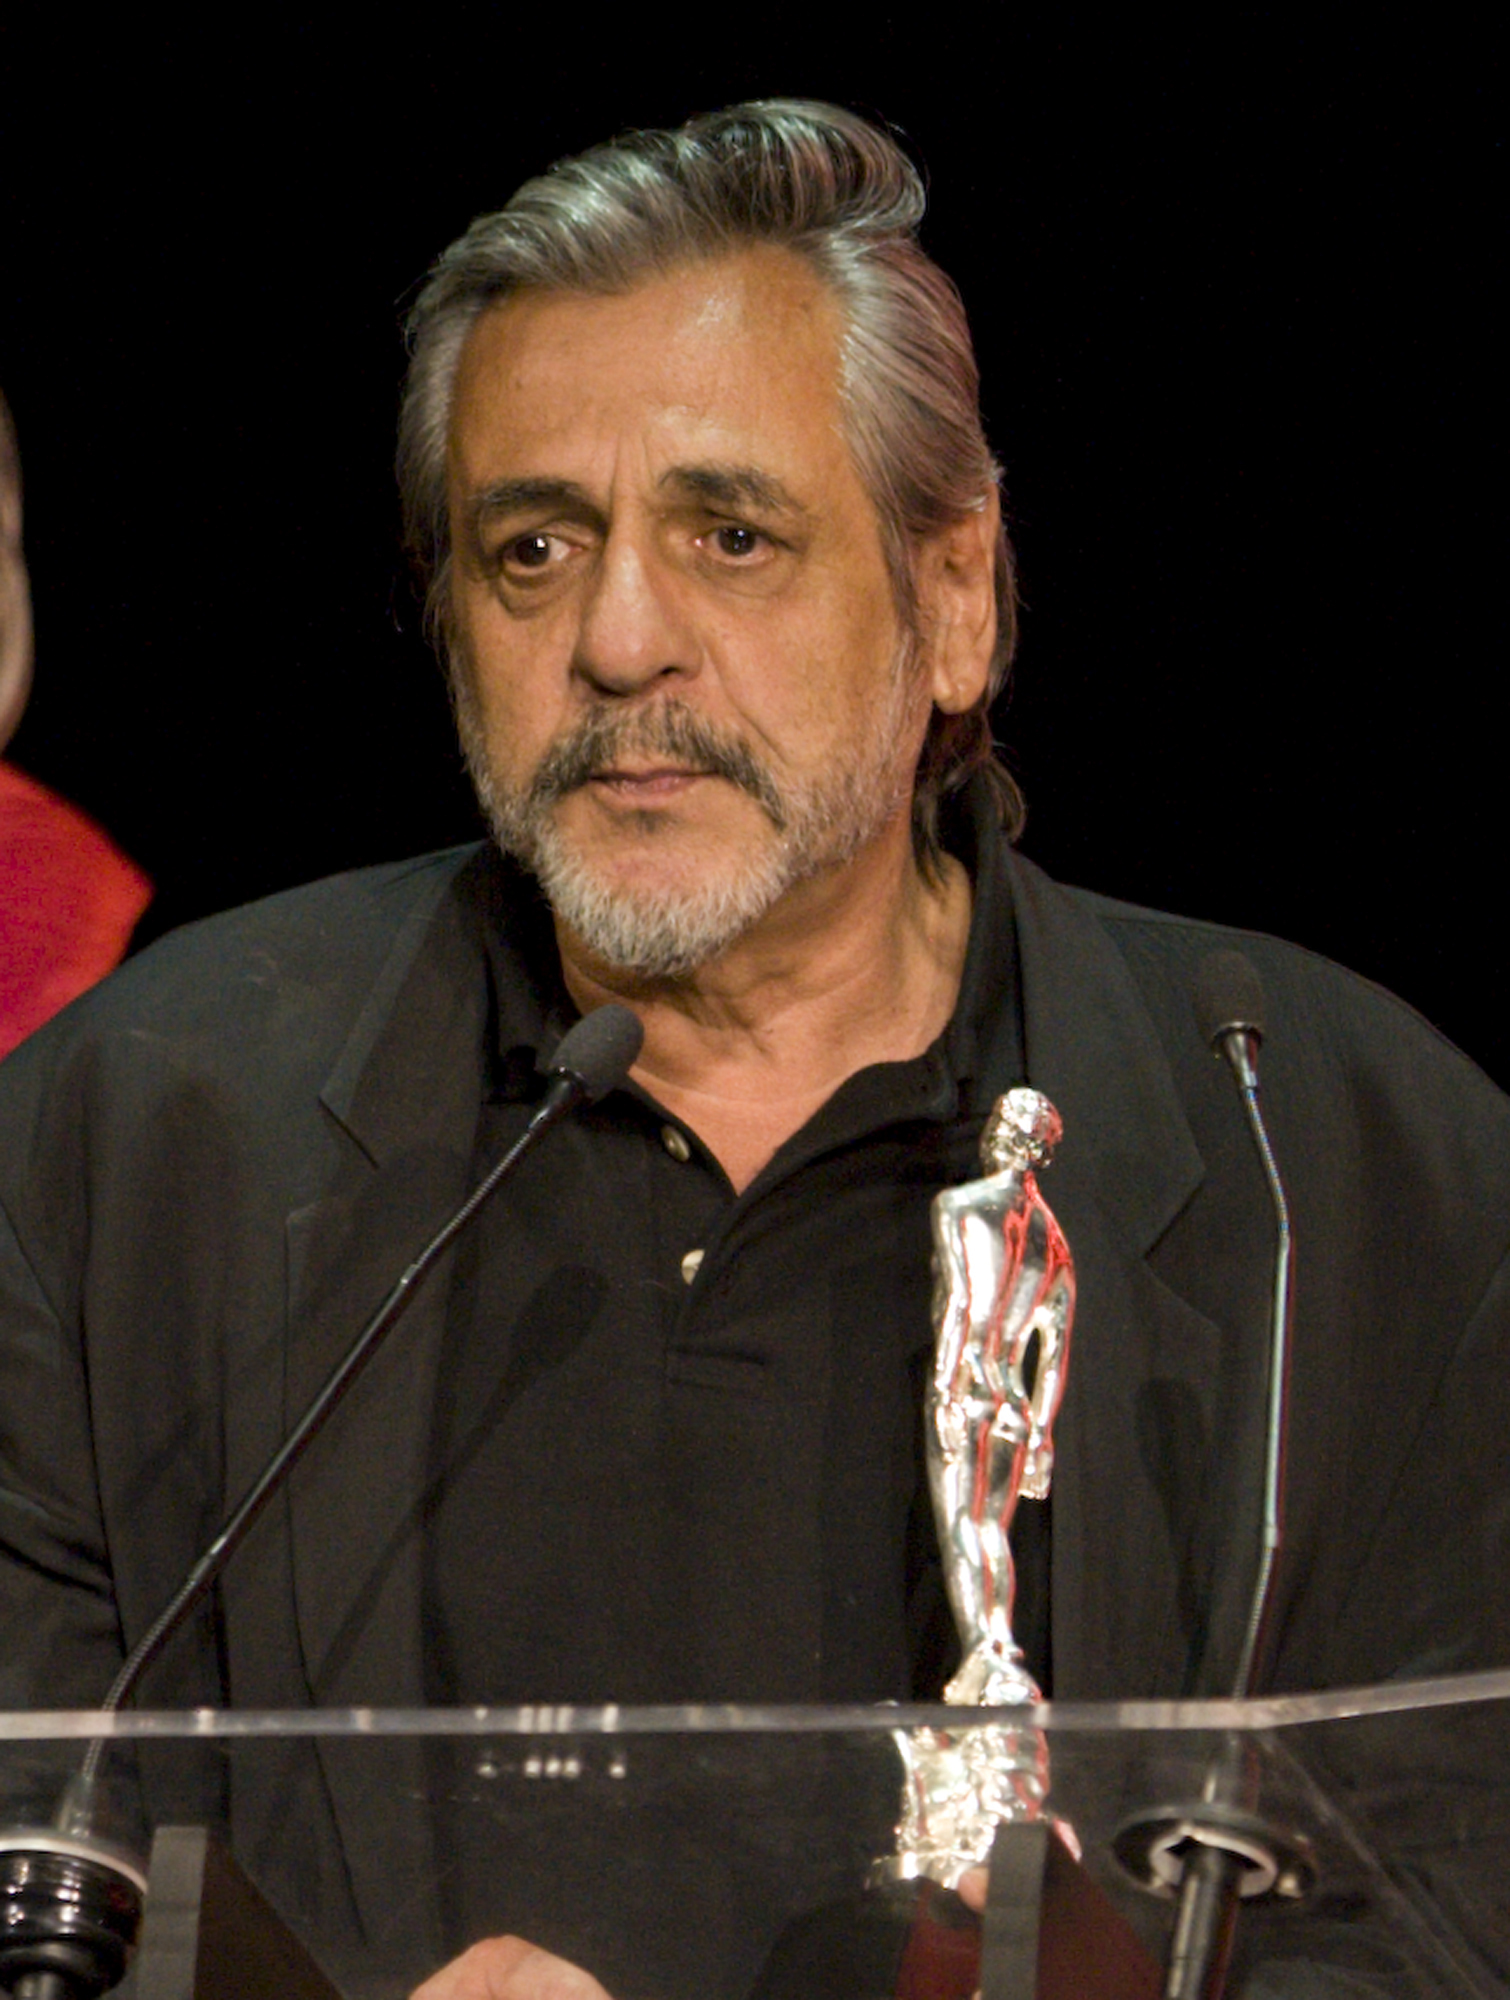 Paul Leduc recibó el Ariel a mejor guion adaptado por "Cobrador: In God We Trust" en la 50a entrega de los Premios Ariel el 25 de marzo de 2008 en la Ciudad de México. (Foto: AP)